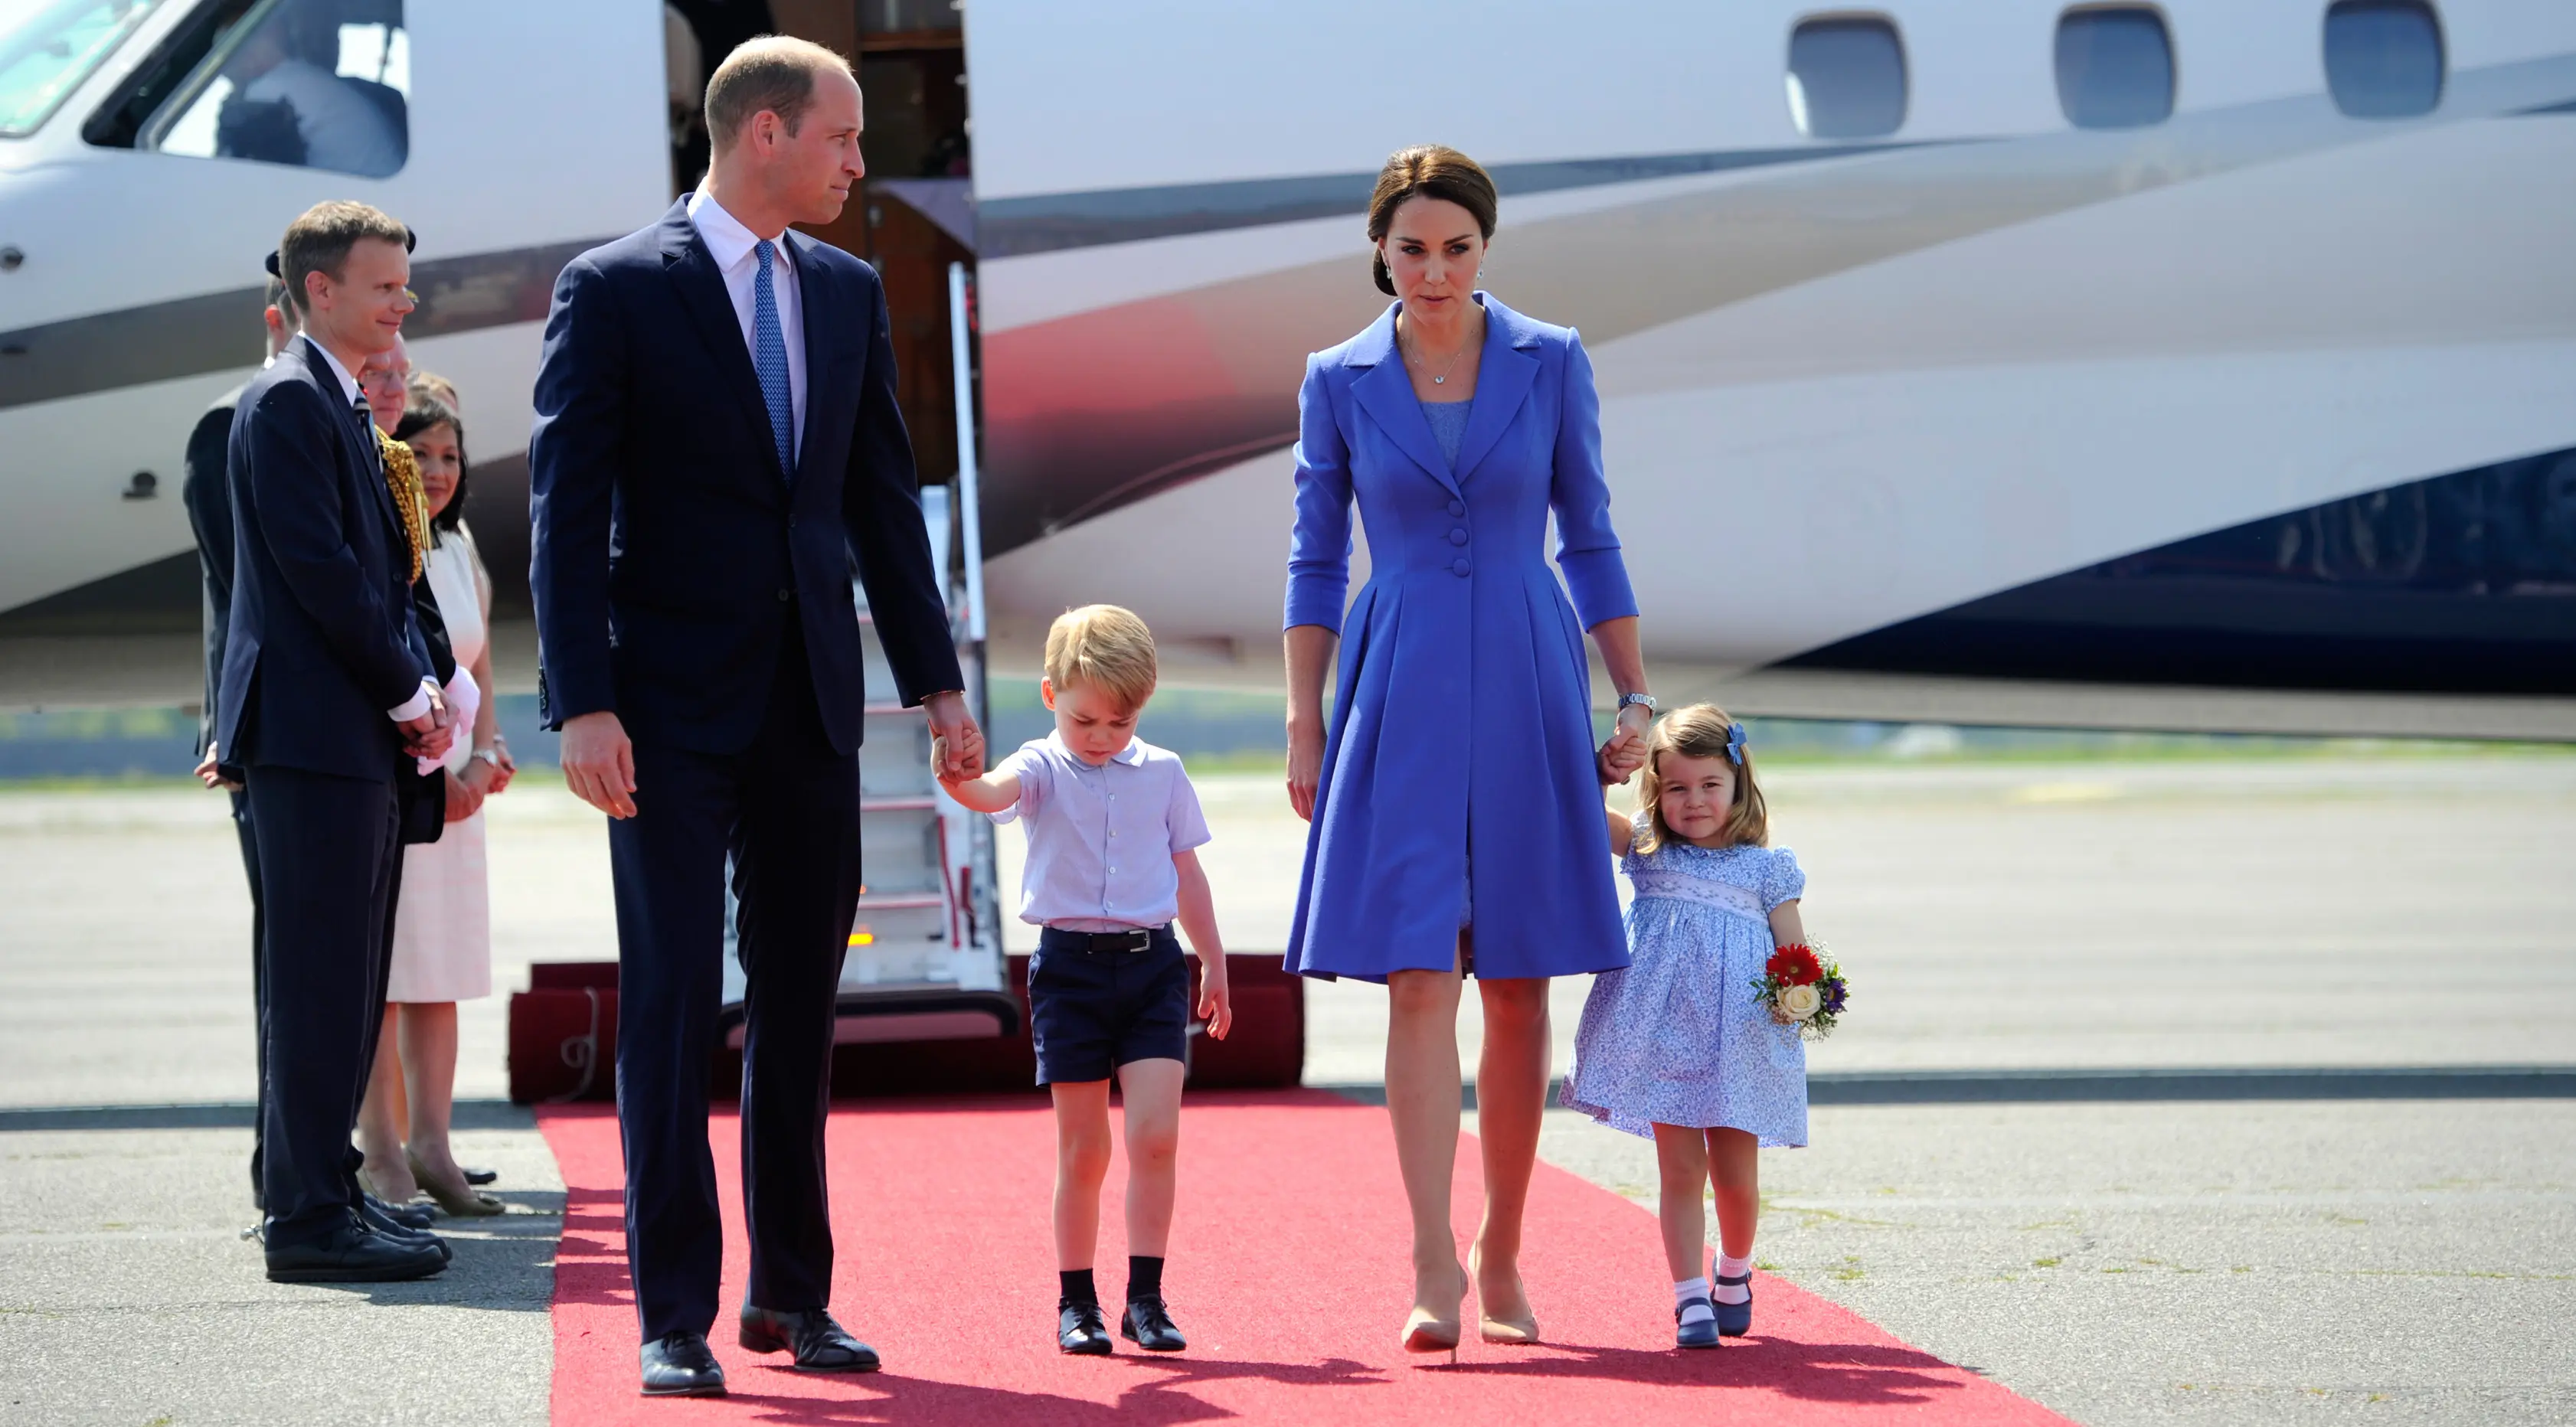 Pangeran William dan Kate Middleton serta kedua anak mereka, Pangeran George dan Putri Charlotte tiba di bandara Tegel, Berlin, Rabu (19/7). Menjalani tur, keluarga kerajaan Inggris itu kompak memakai nuansa biru dalam busananya. (Steffi Loos/Pool via AP)